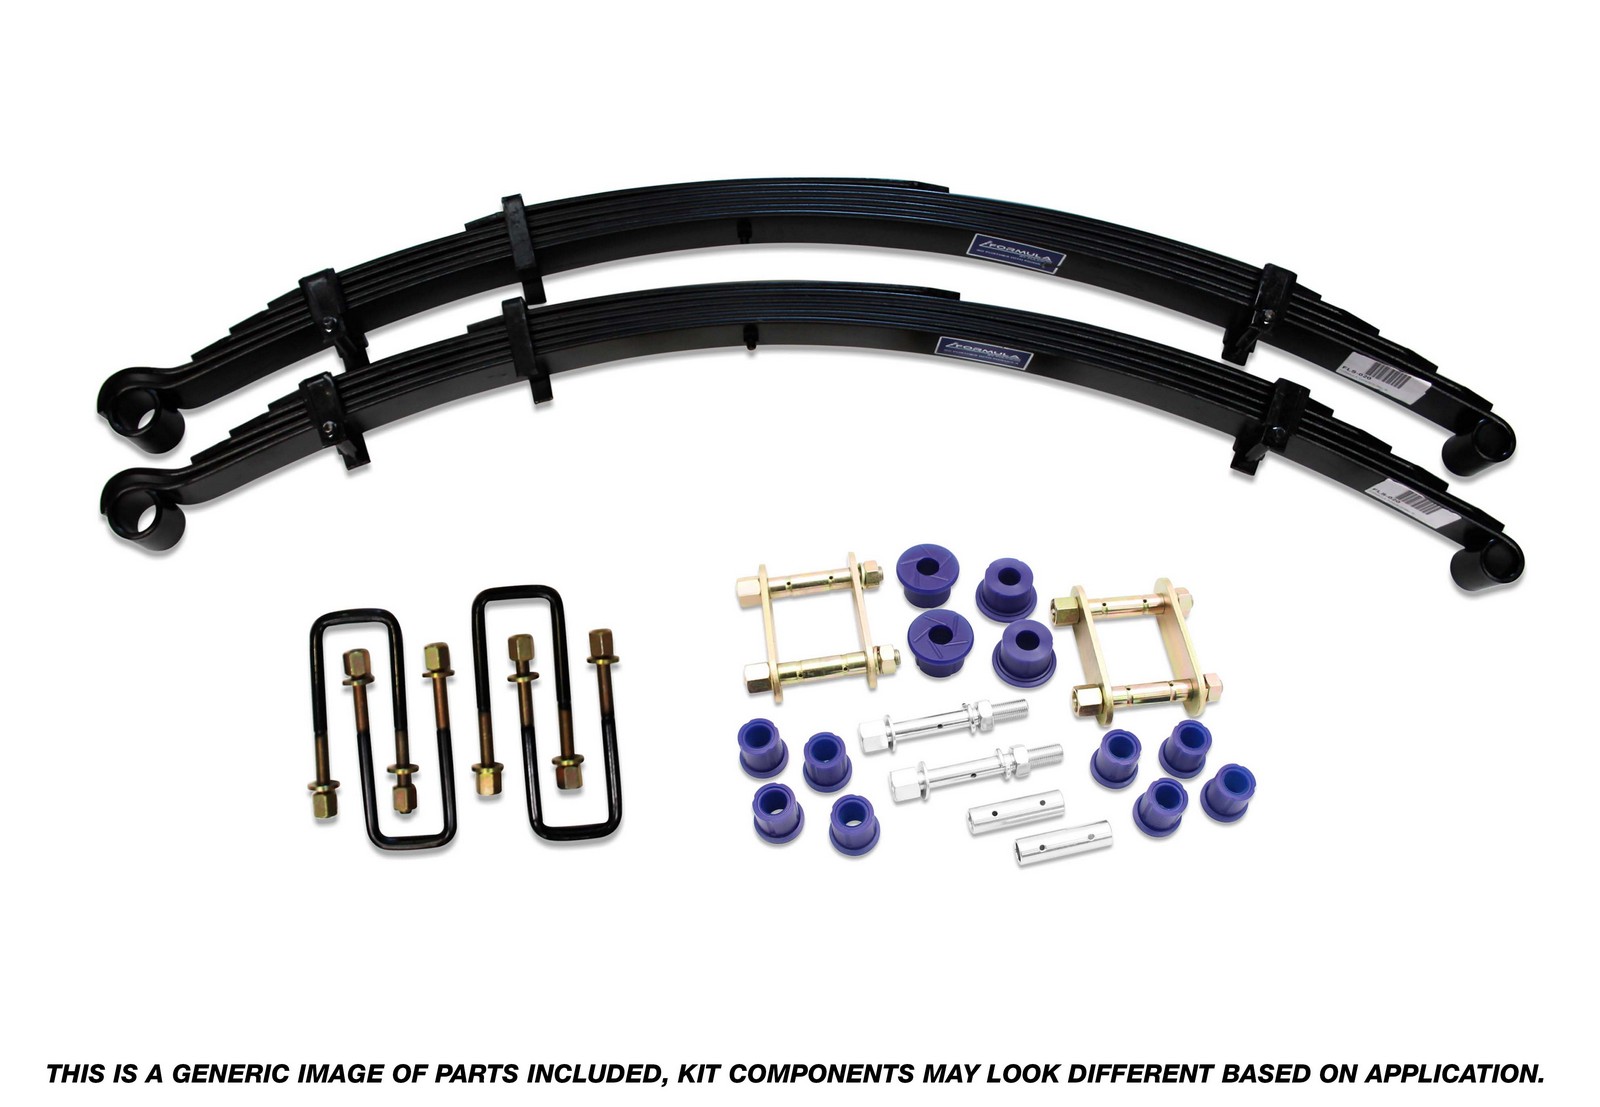 Formula 4x4 Rear Leaf Spring Kit - 50mm Lift at 0-300kg to suit Mazda BT-50 2011-2020 & Ford Ranger PX 2011 - 2018